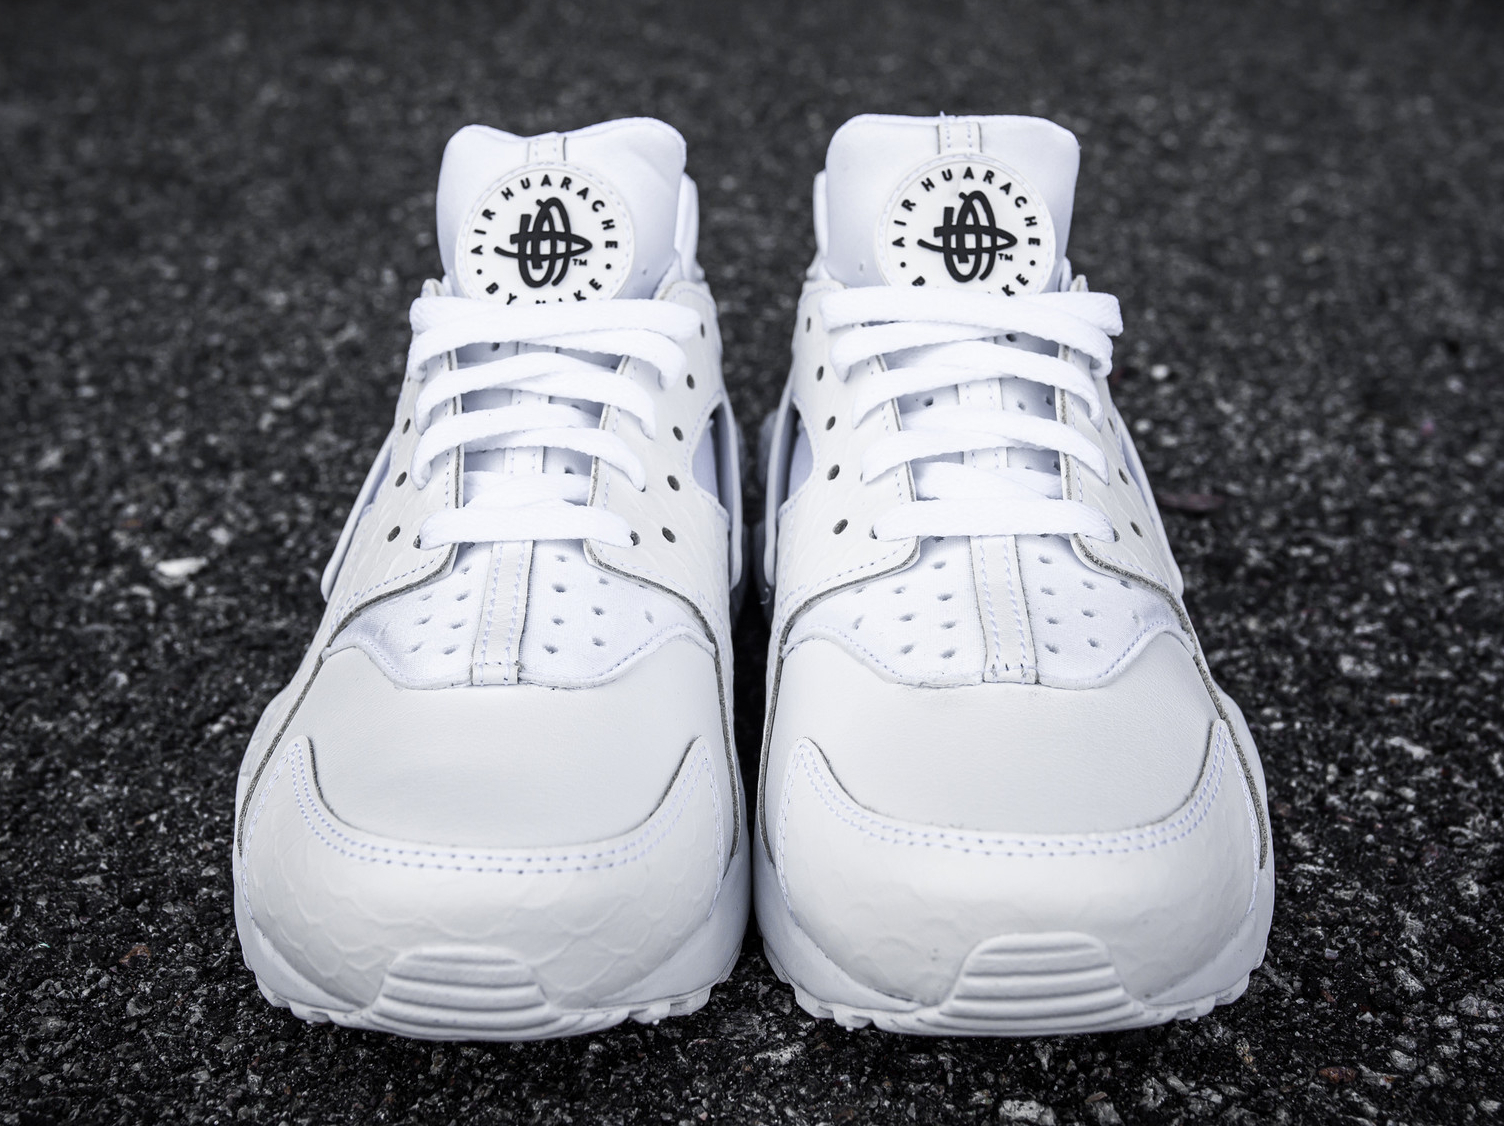 Chaussure Nike Air Huarache Premium White Scales (blanche) (2)